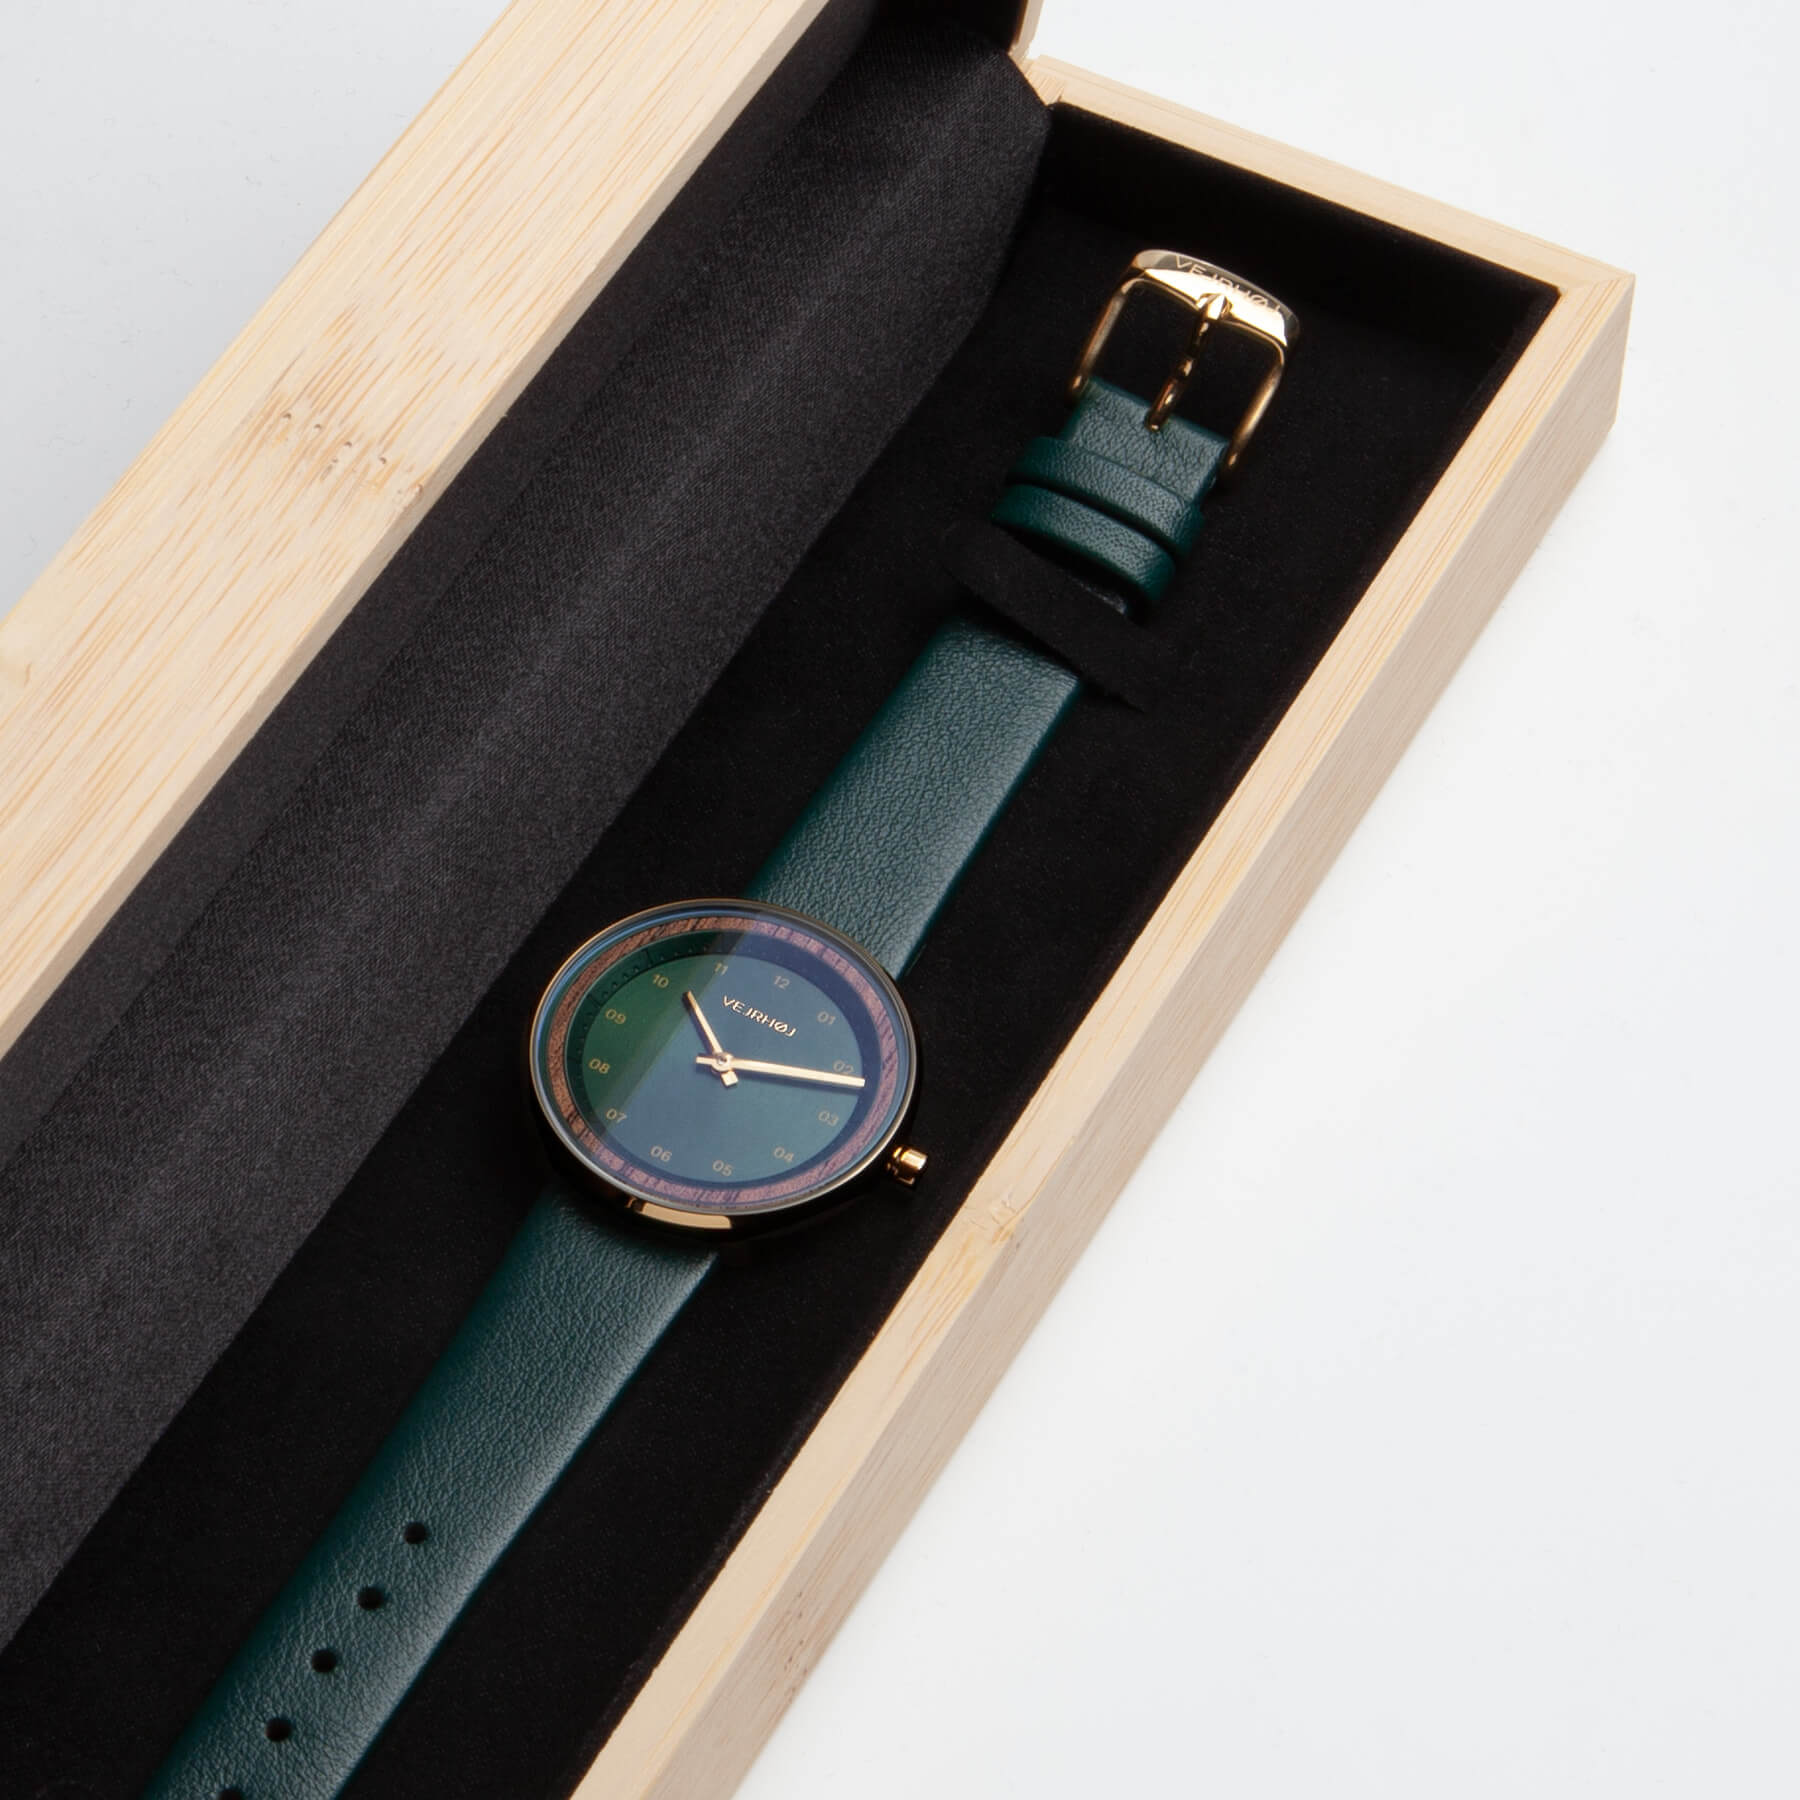 グリーン色の腕時計が綺麗に作った竹箱に中に乗っている